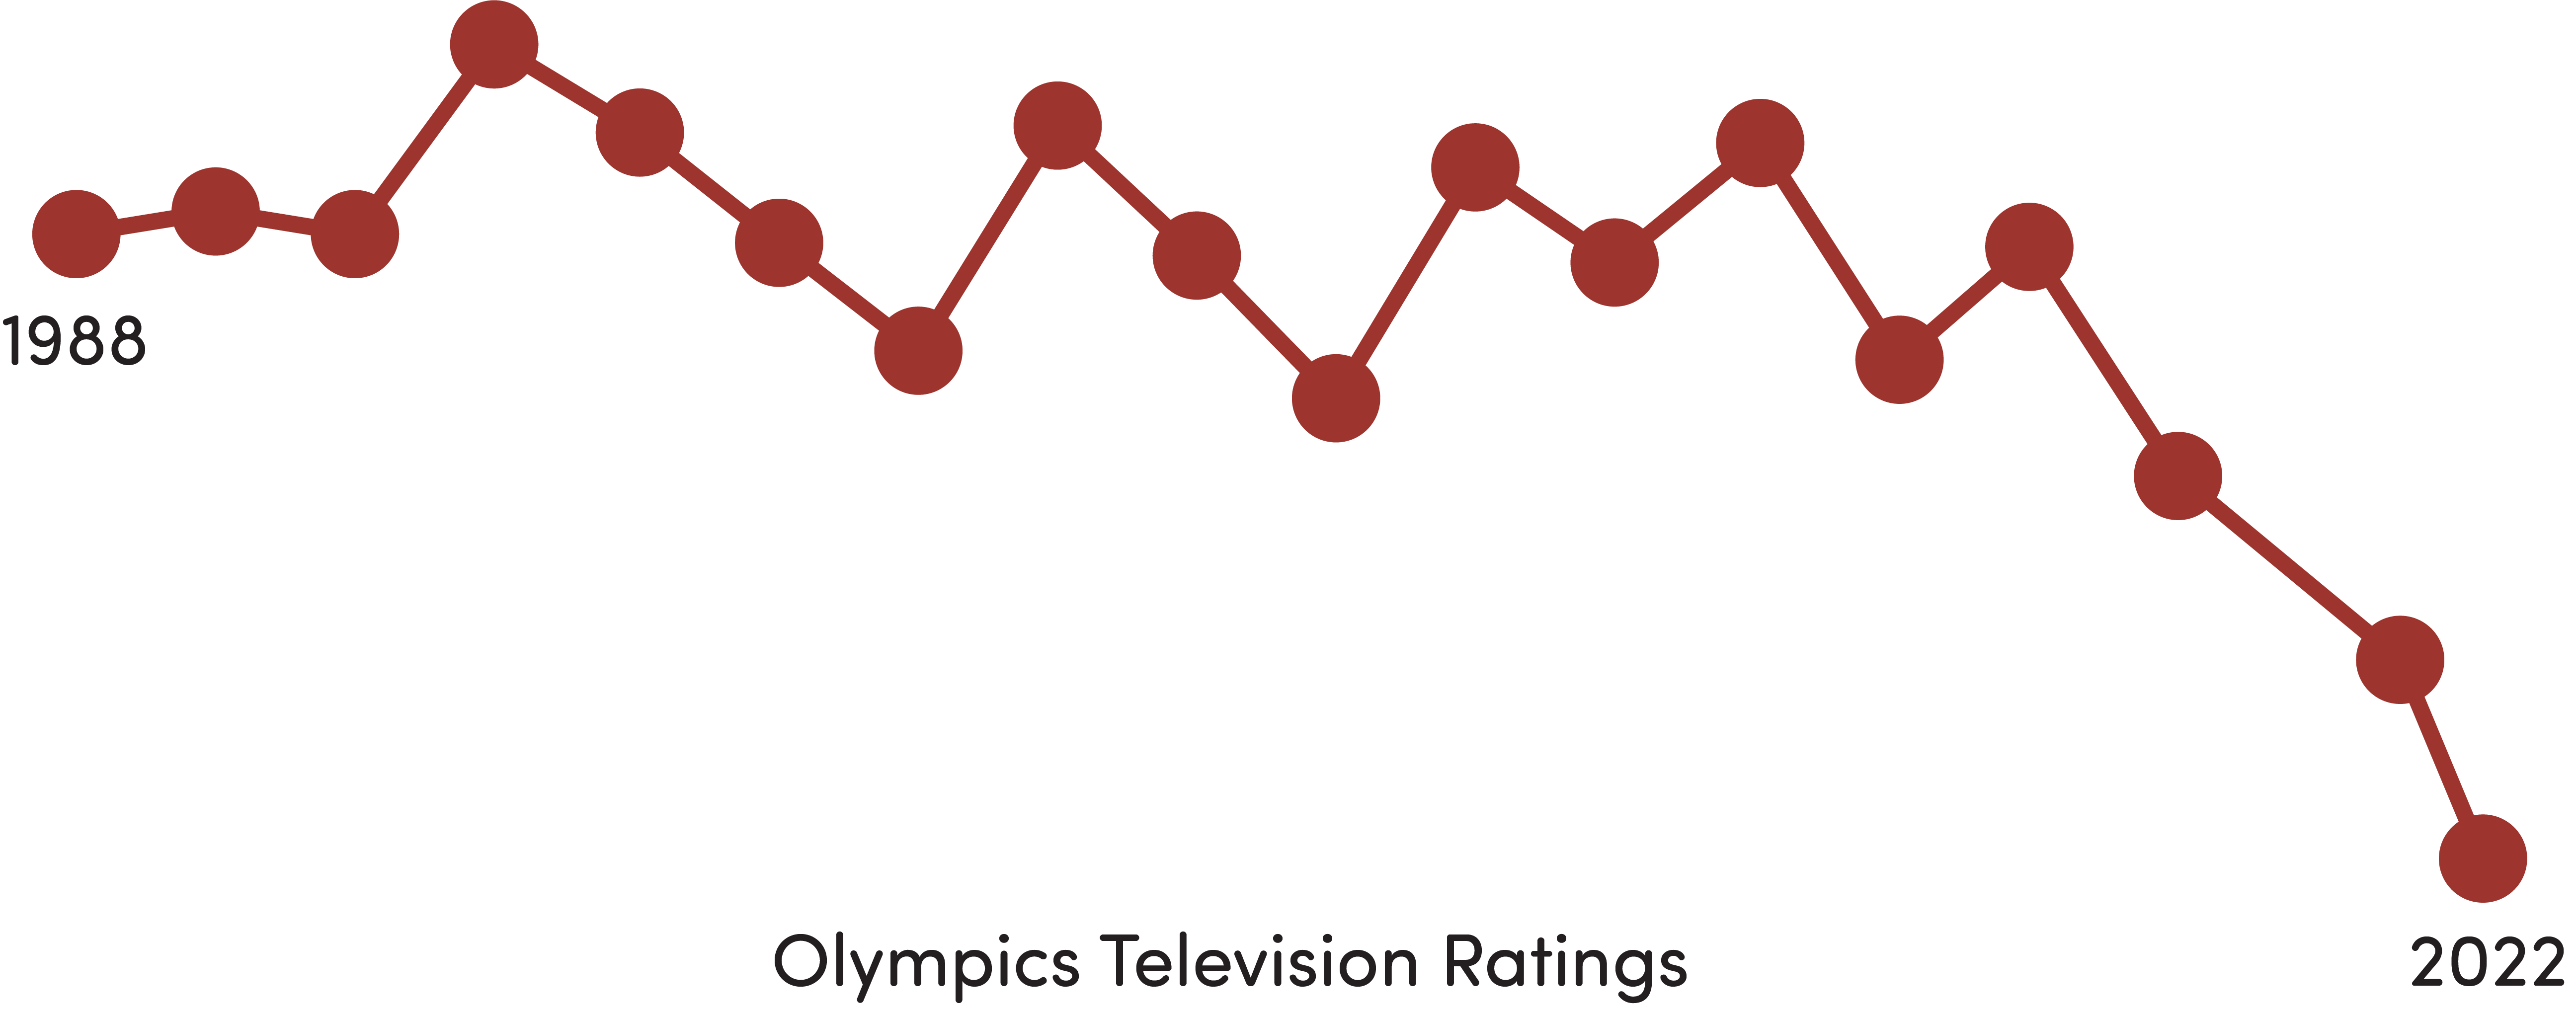 viewership graphic